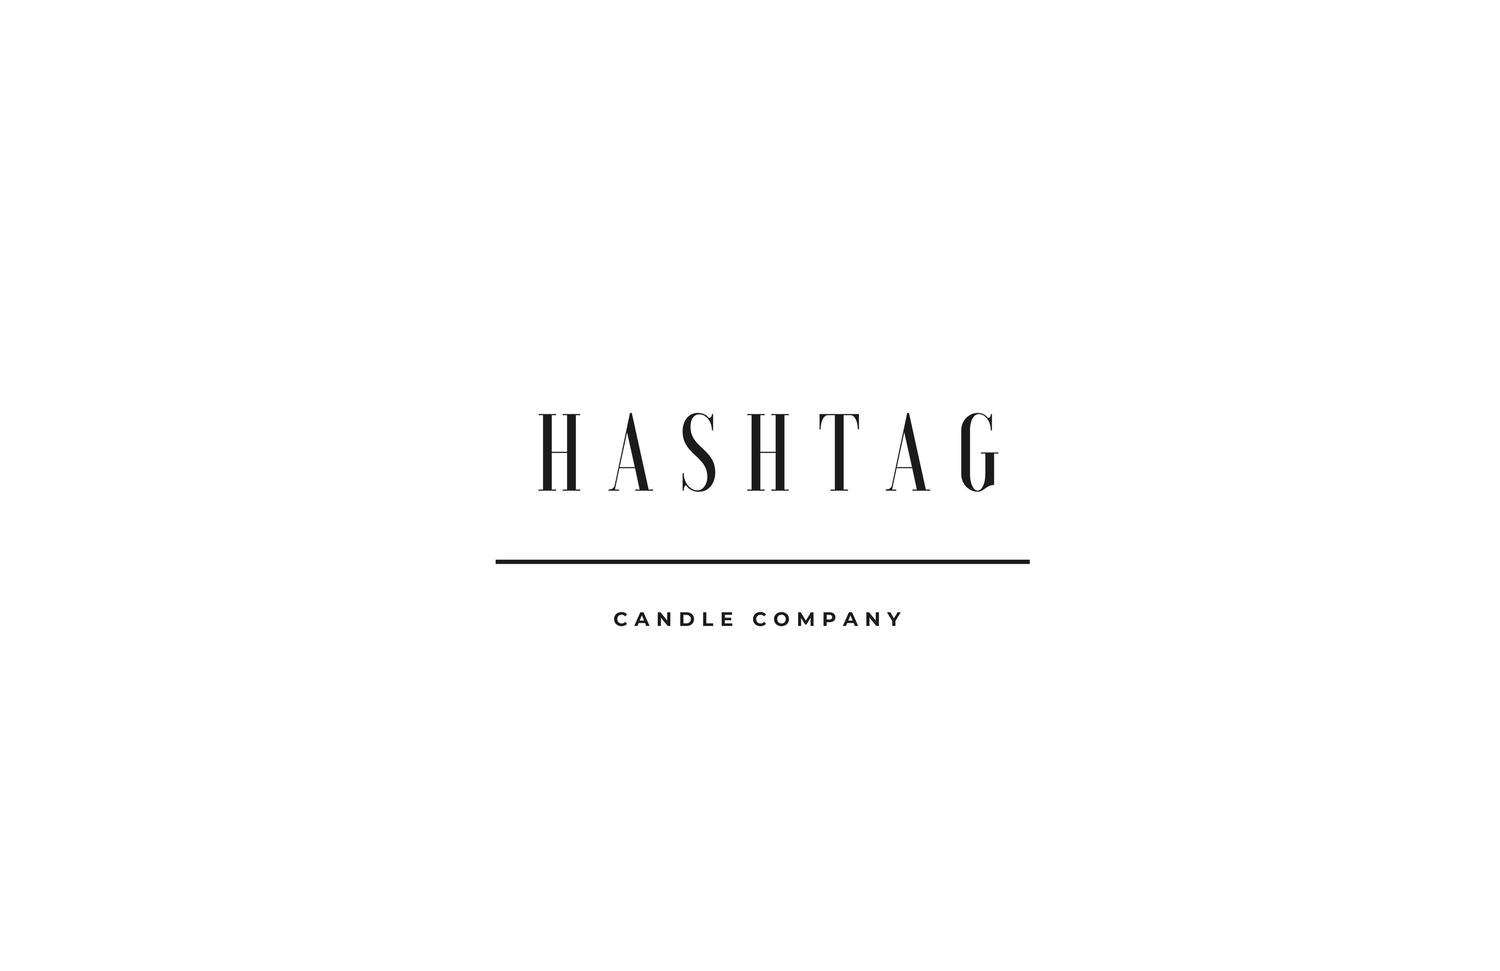 Hashtag Candle Company